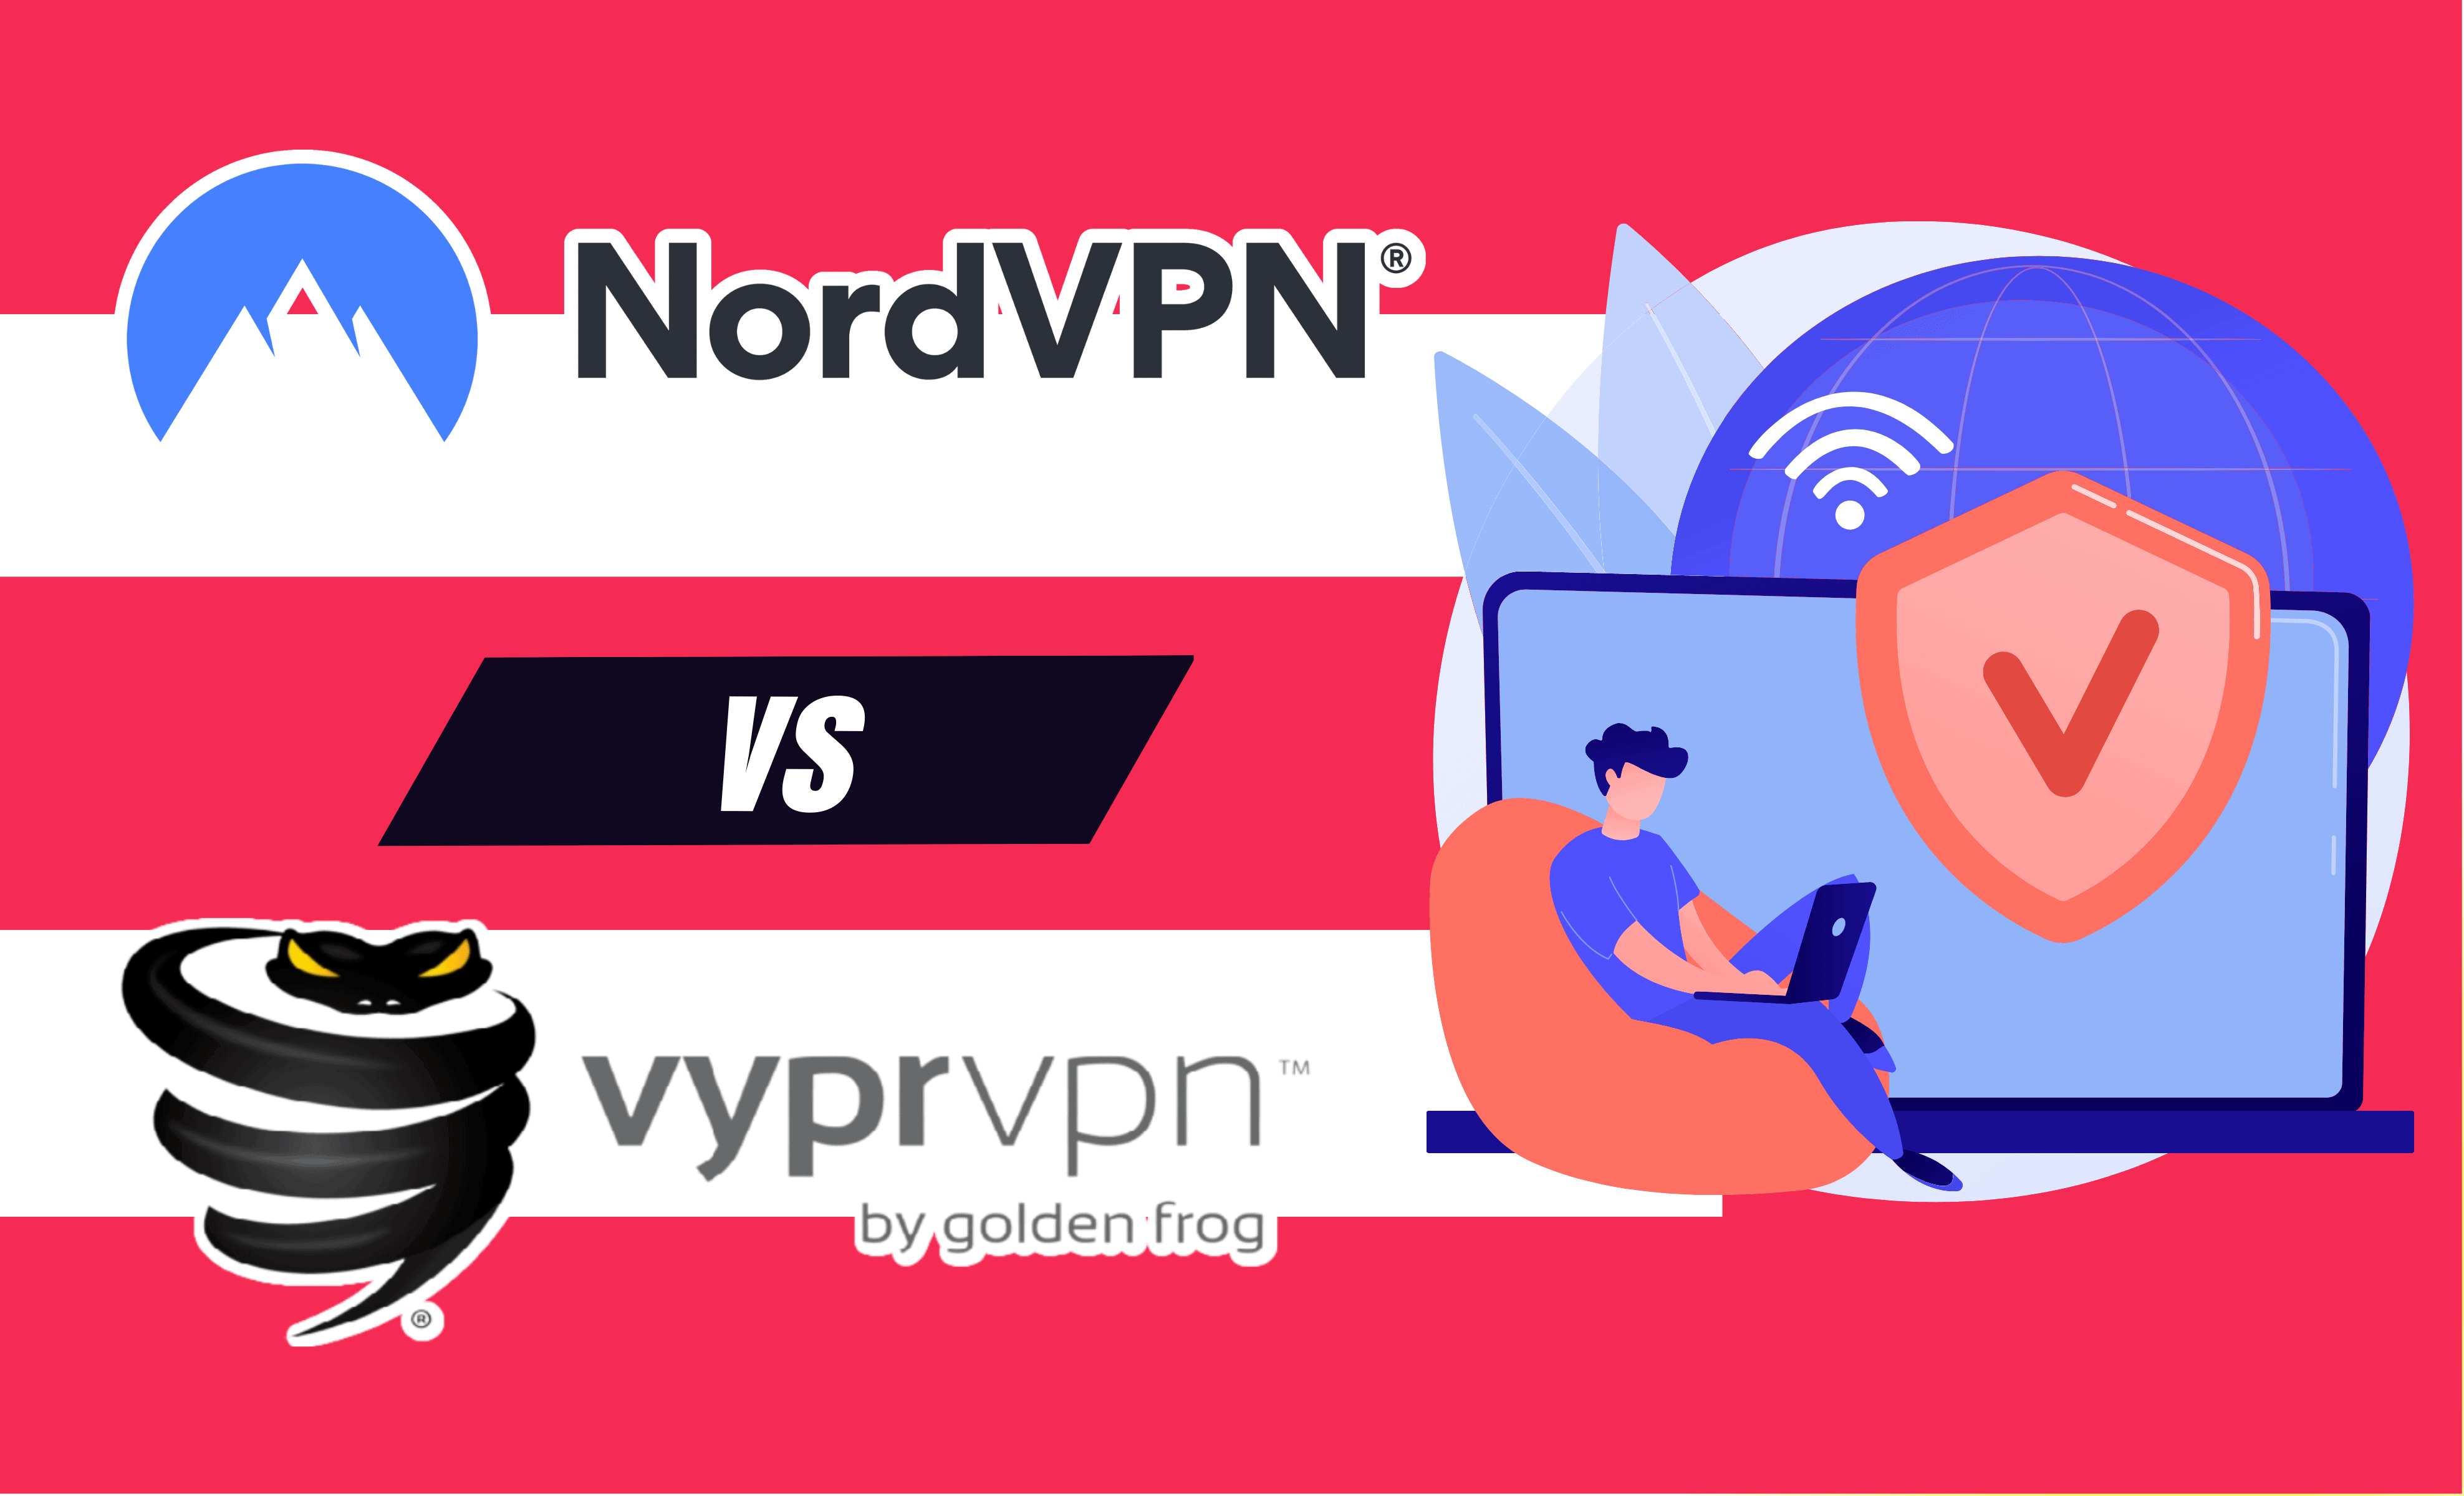 NordVPN vs VyprVPN